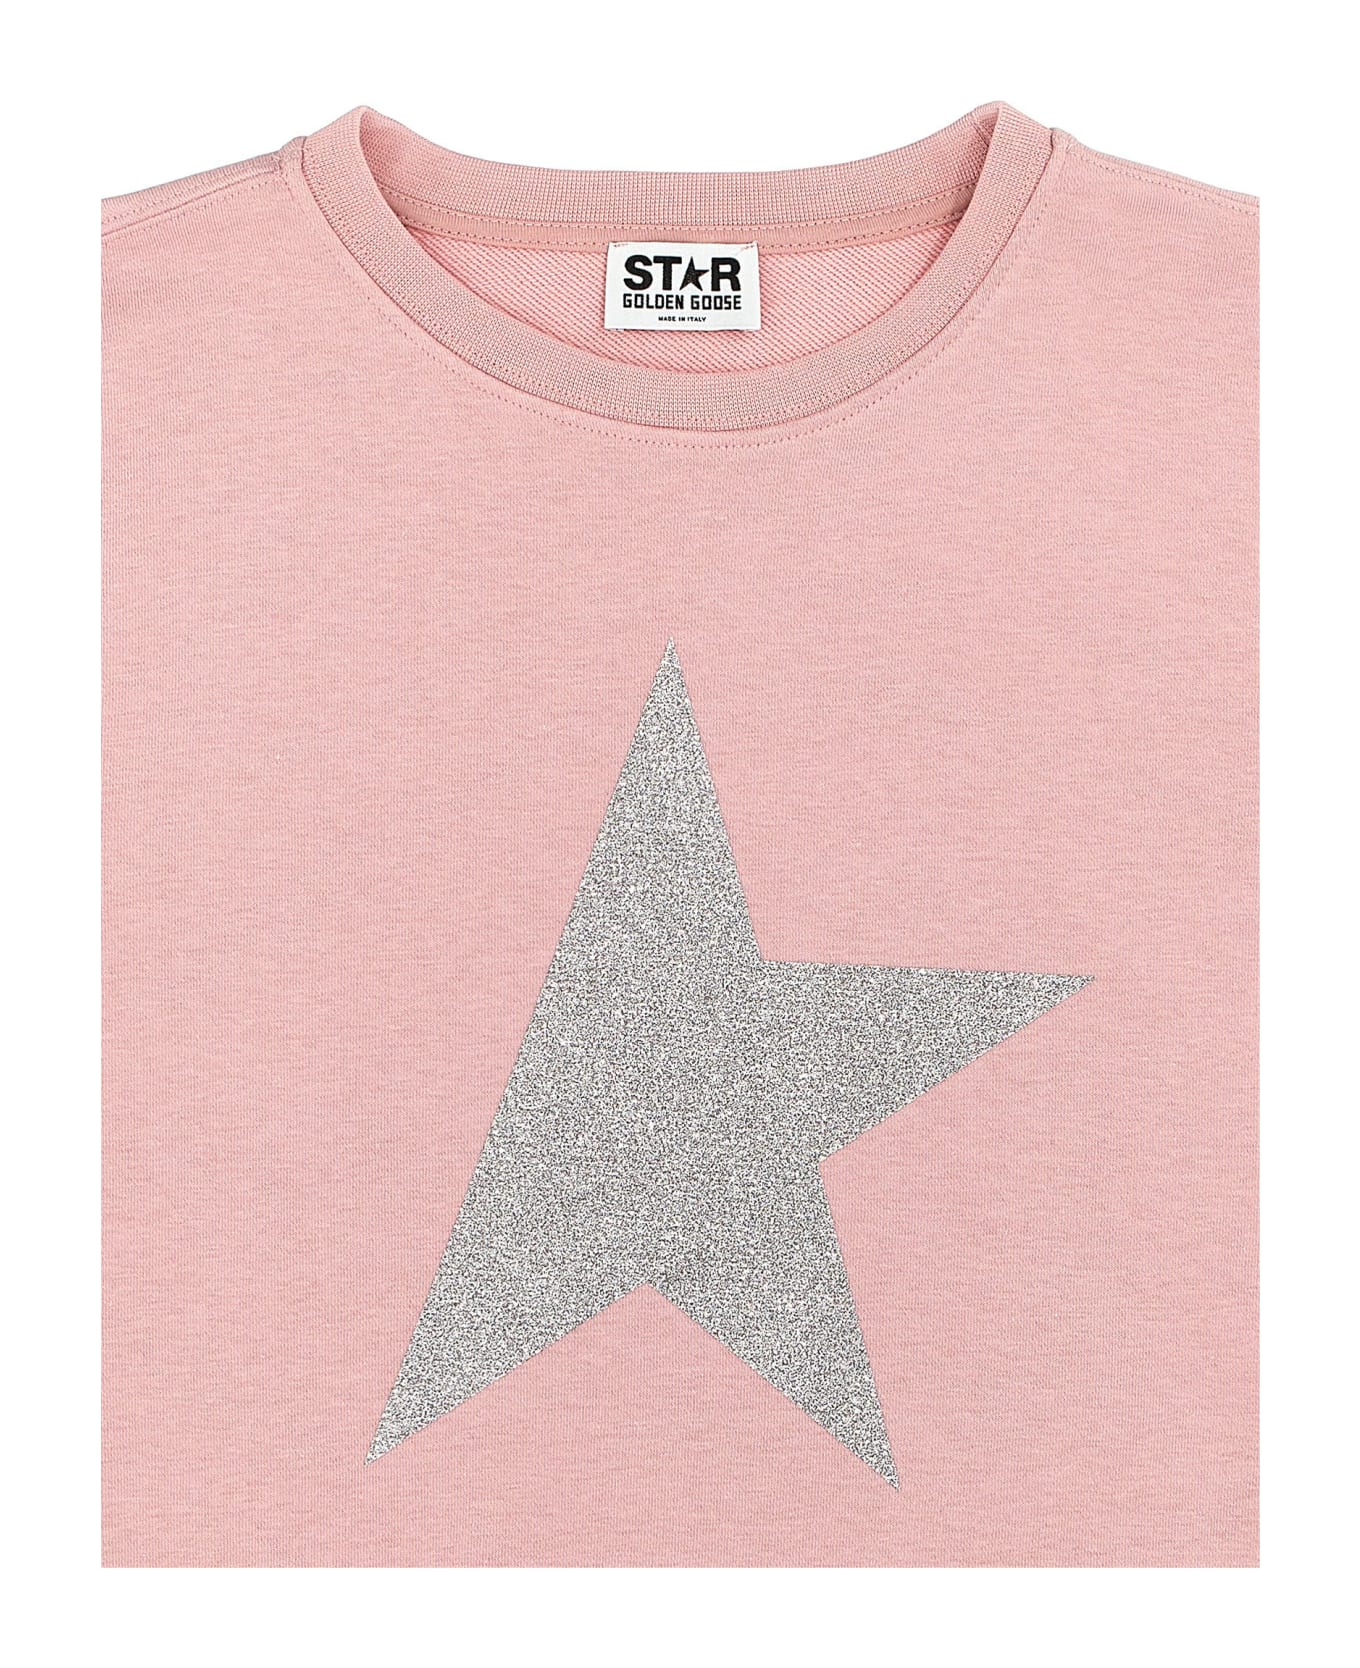 Golden Goose 'star' Sweatshirt - Pink